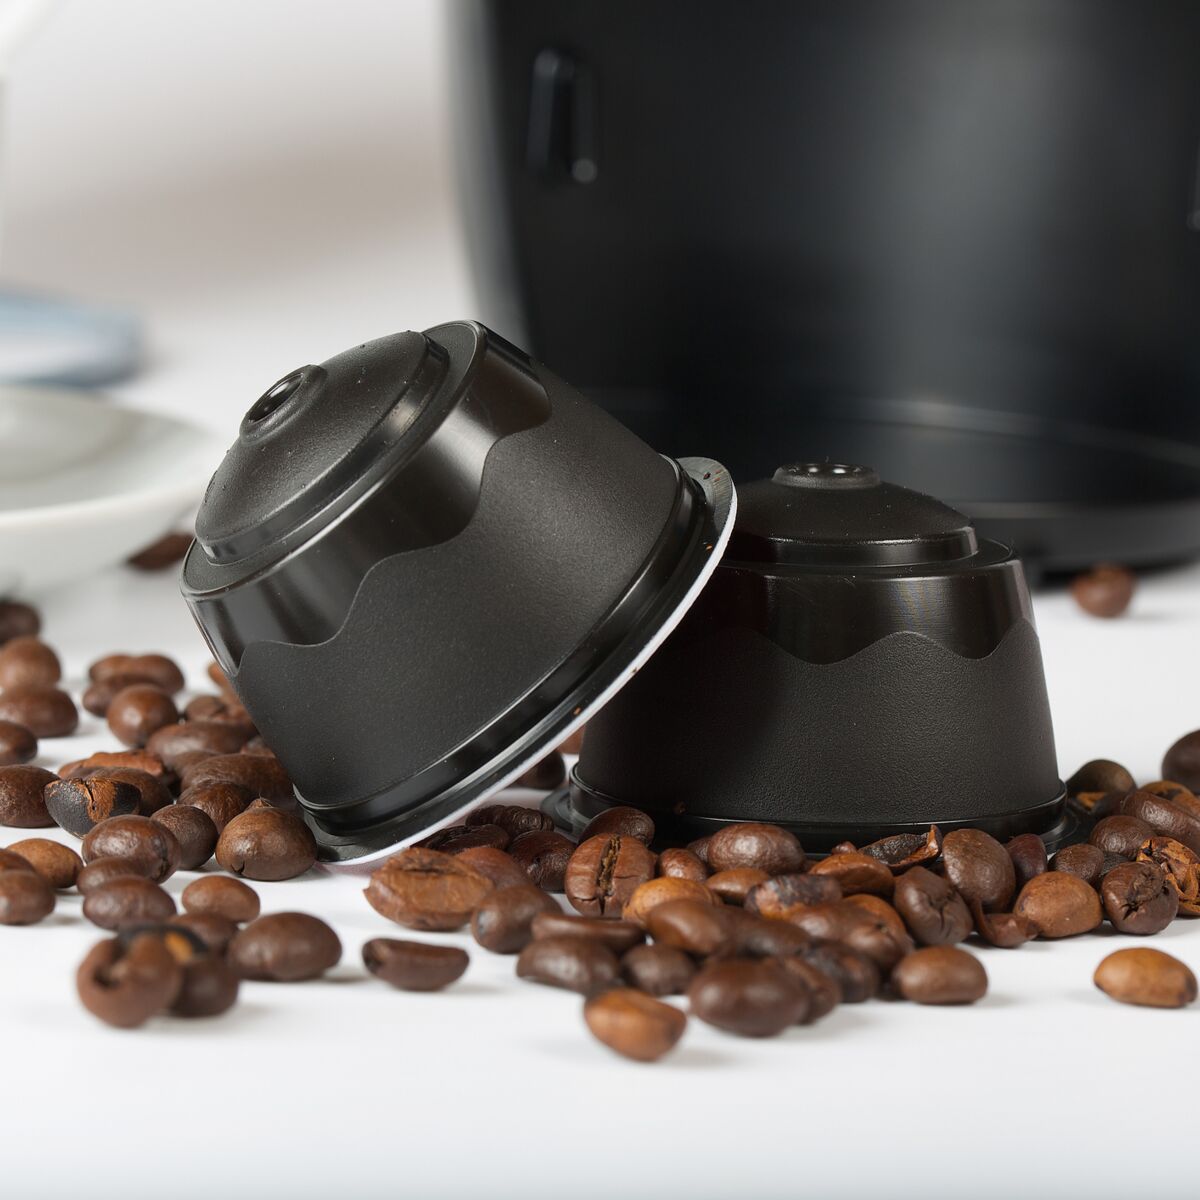 5 idées reçues sur le café en capsules : Femme Actuelle Le MAG